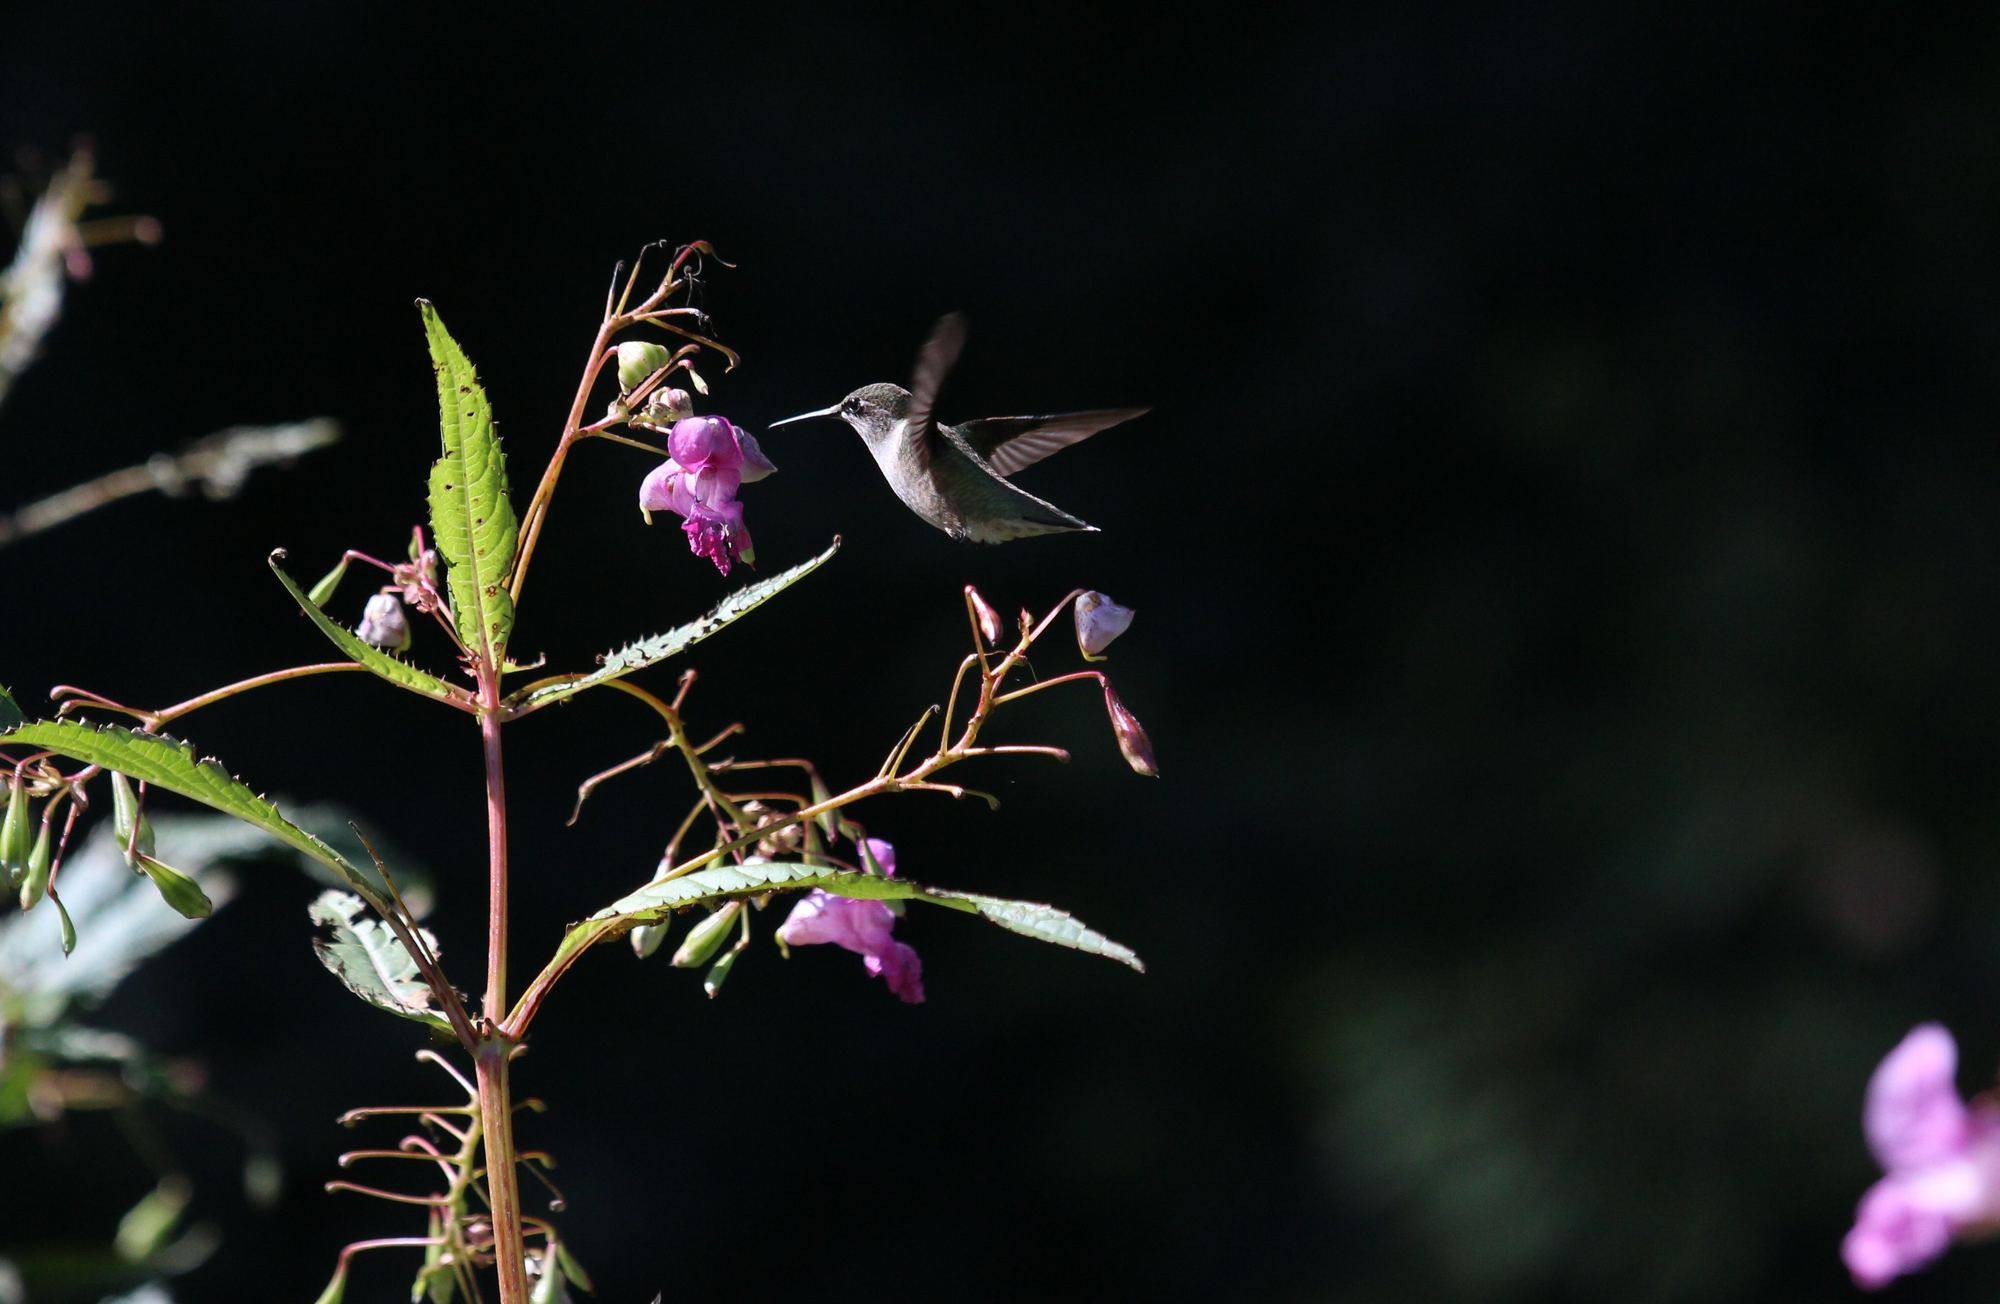 A hummingbird flutters above a purple flower.